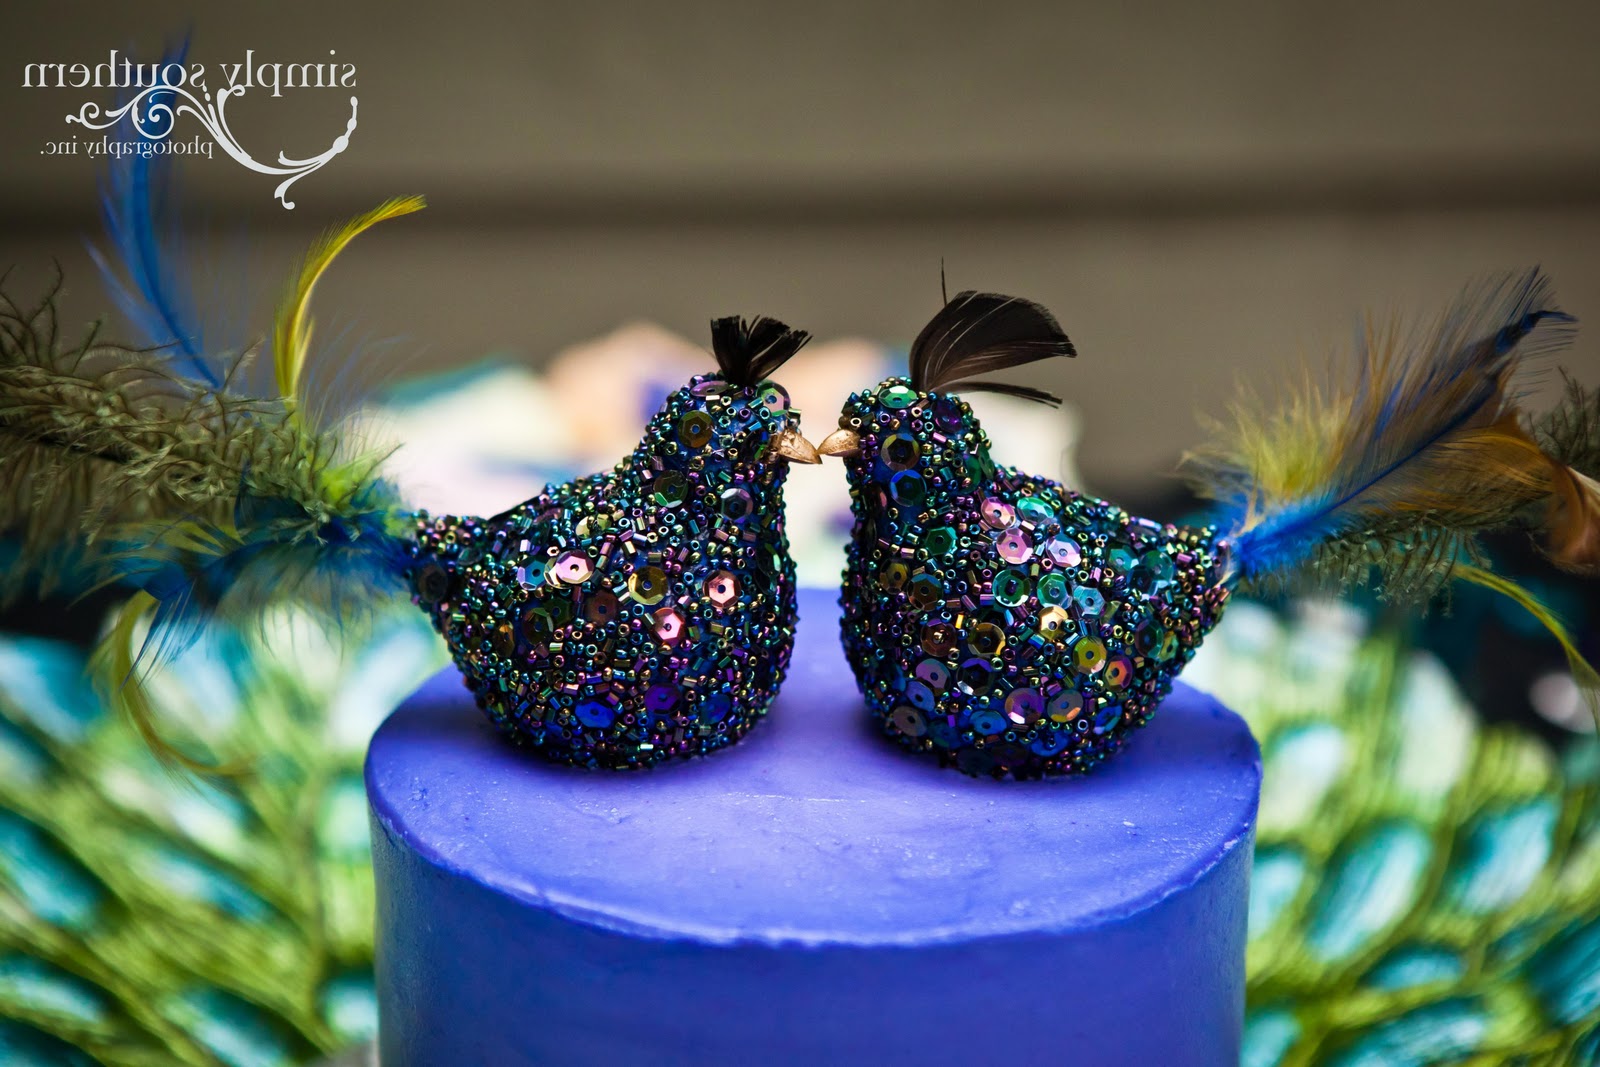 peacock wedding cake winston